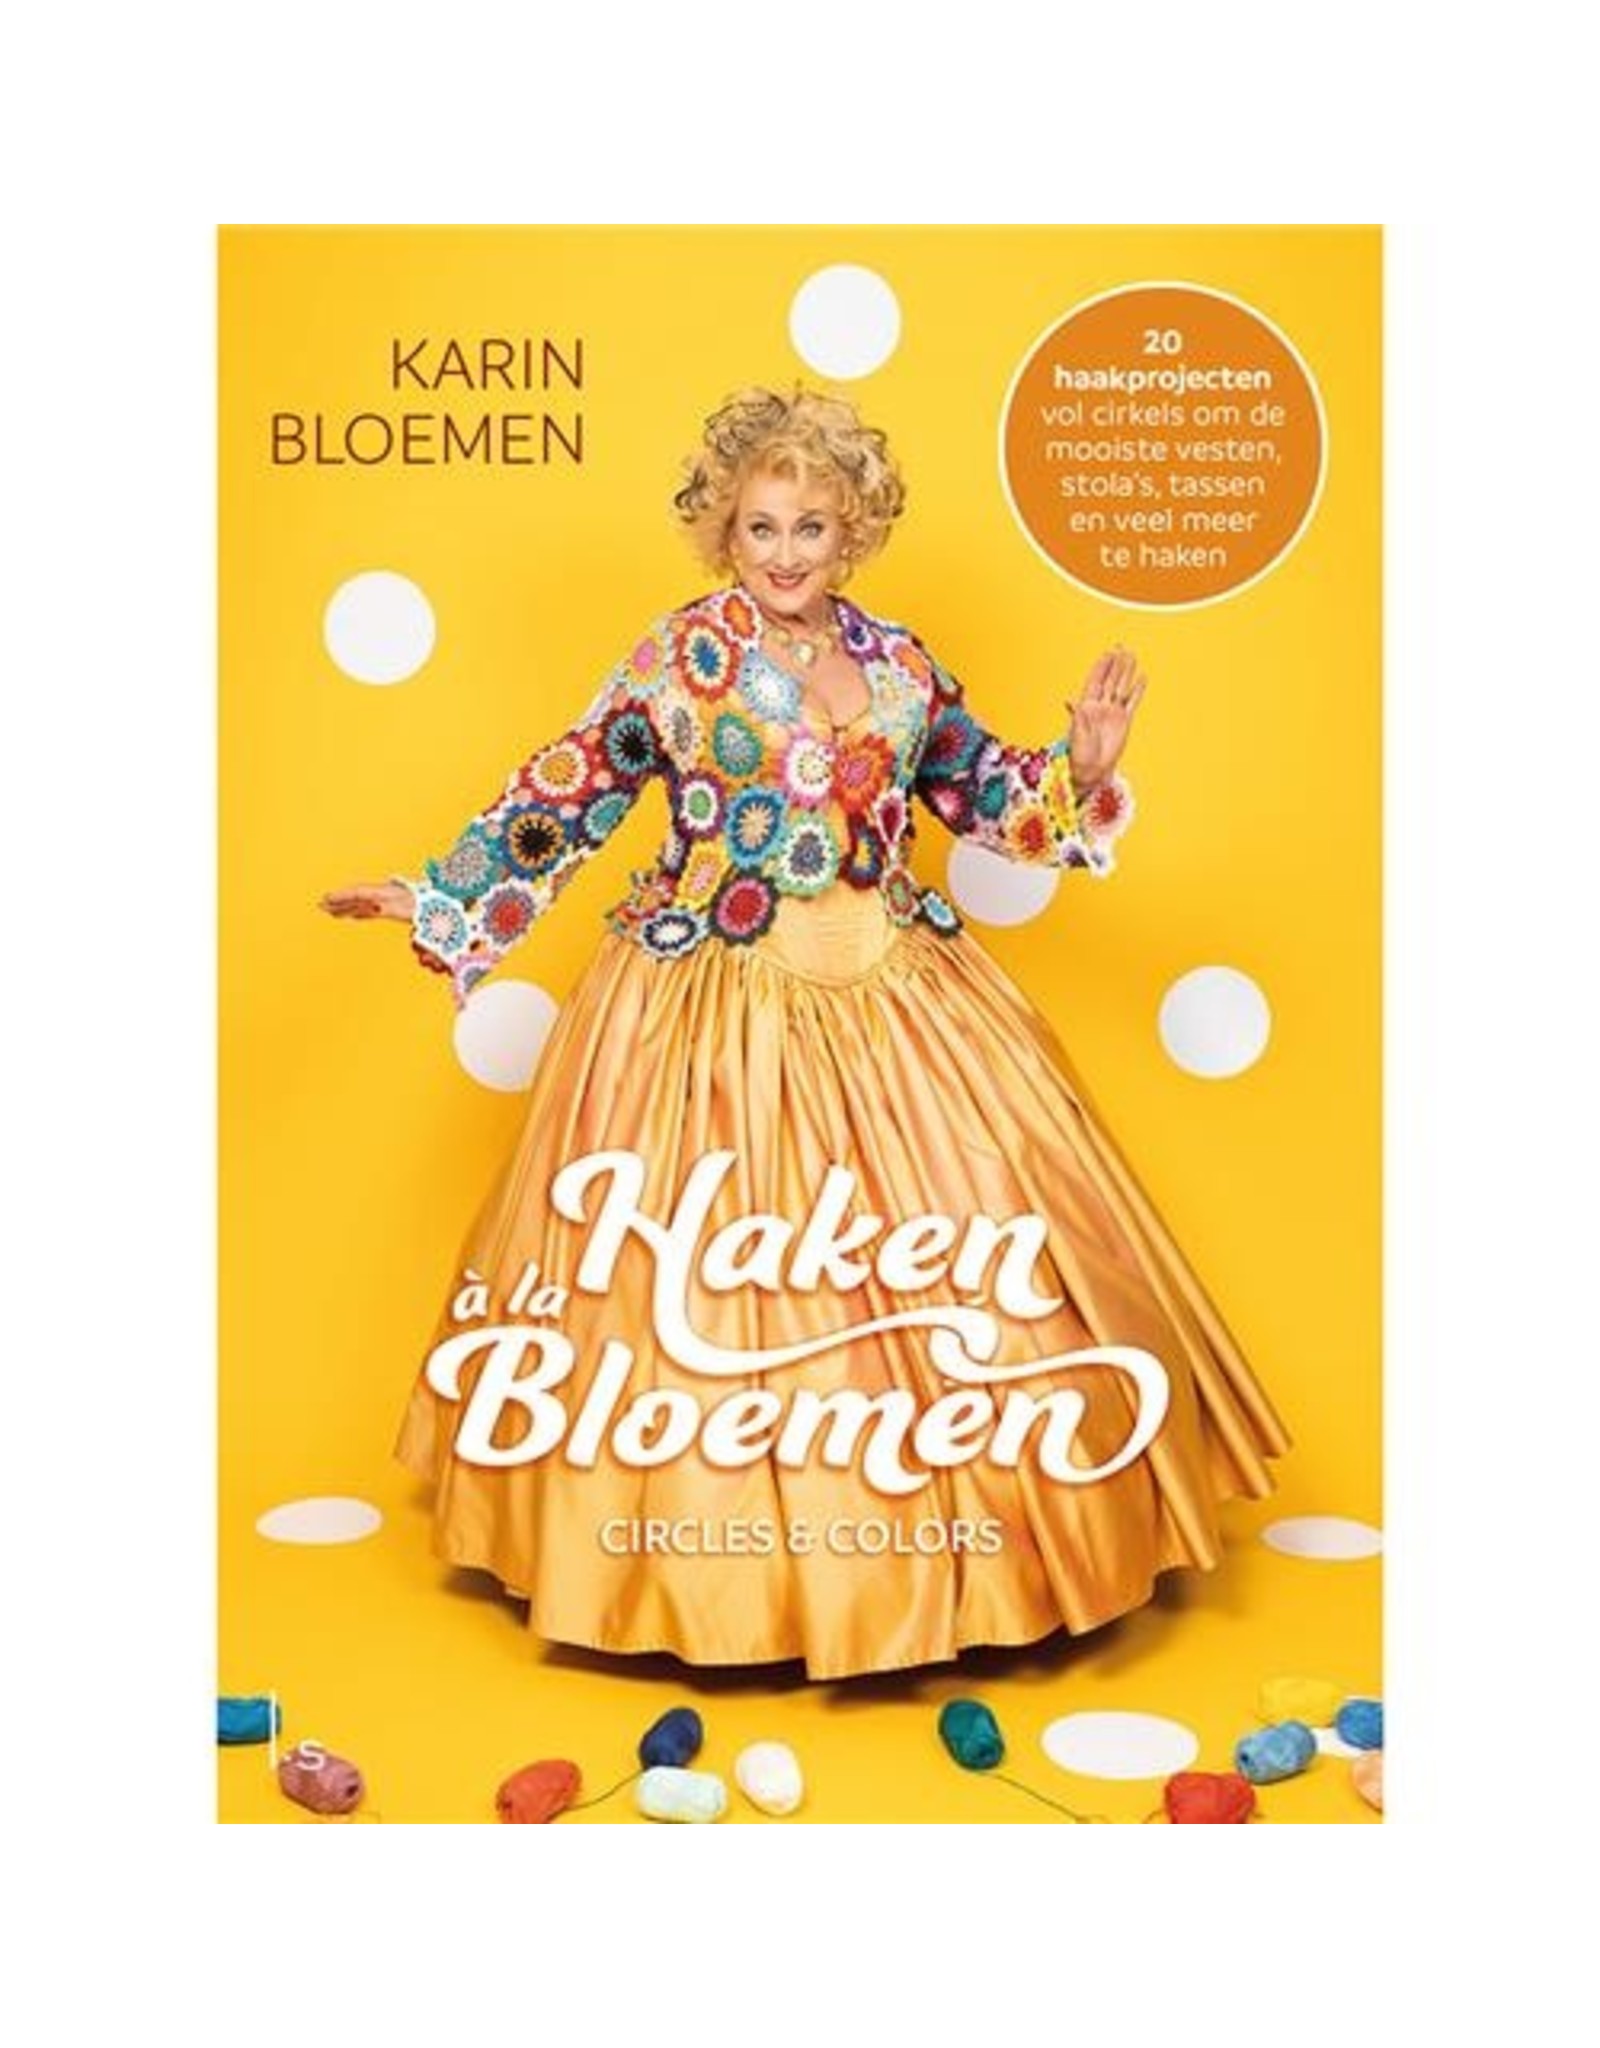 Boek: Haken a la Bloemen - circles & colors - Karin bloemen